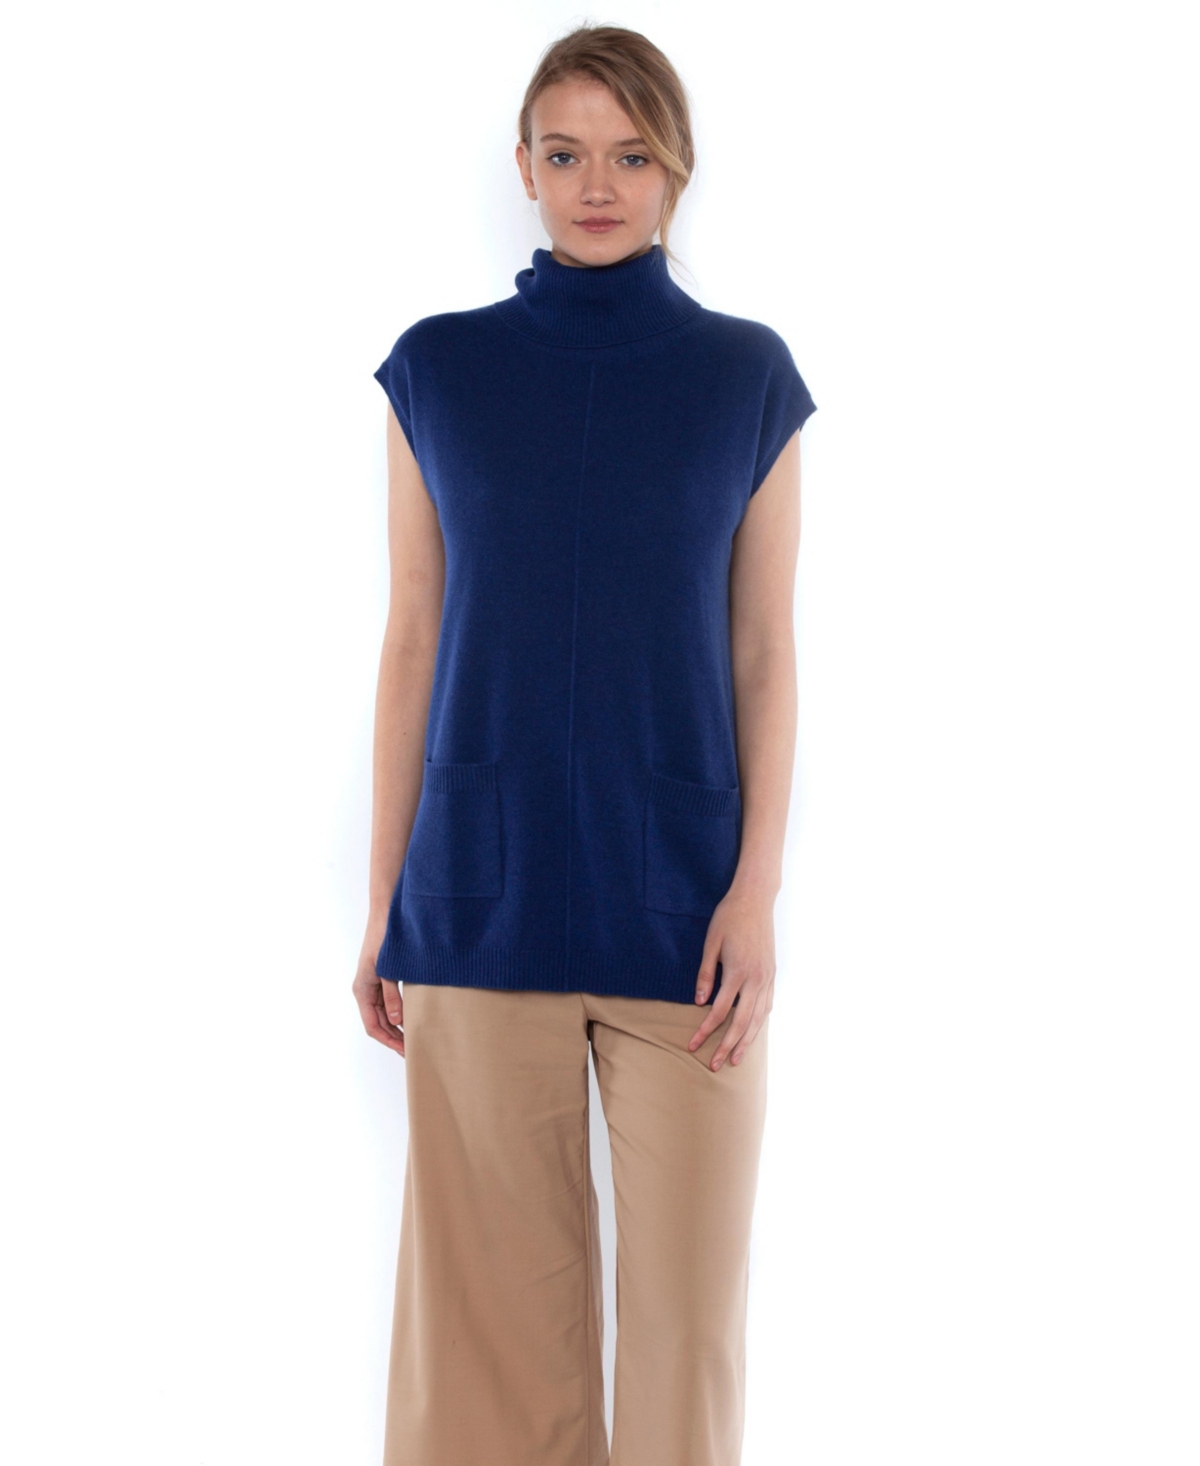 Women's 100% Pure Cashmere Sleeveless Turtleneck Hi-Lo Tunic Sweater - Marled blue